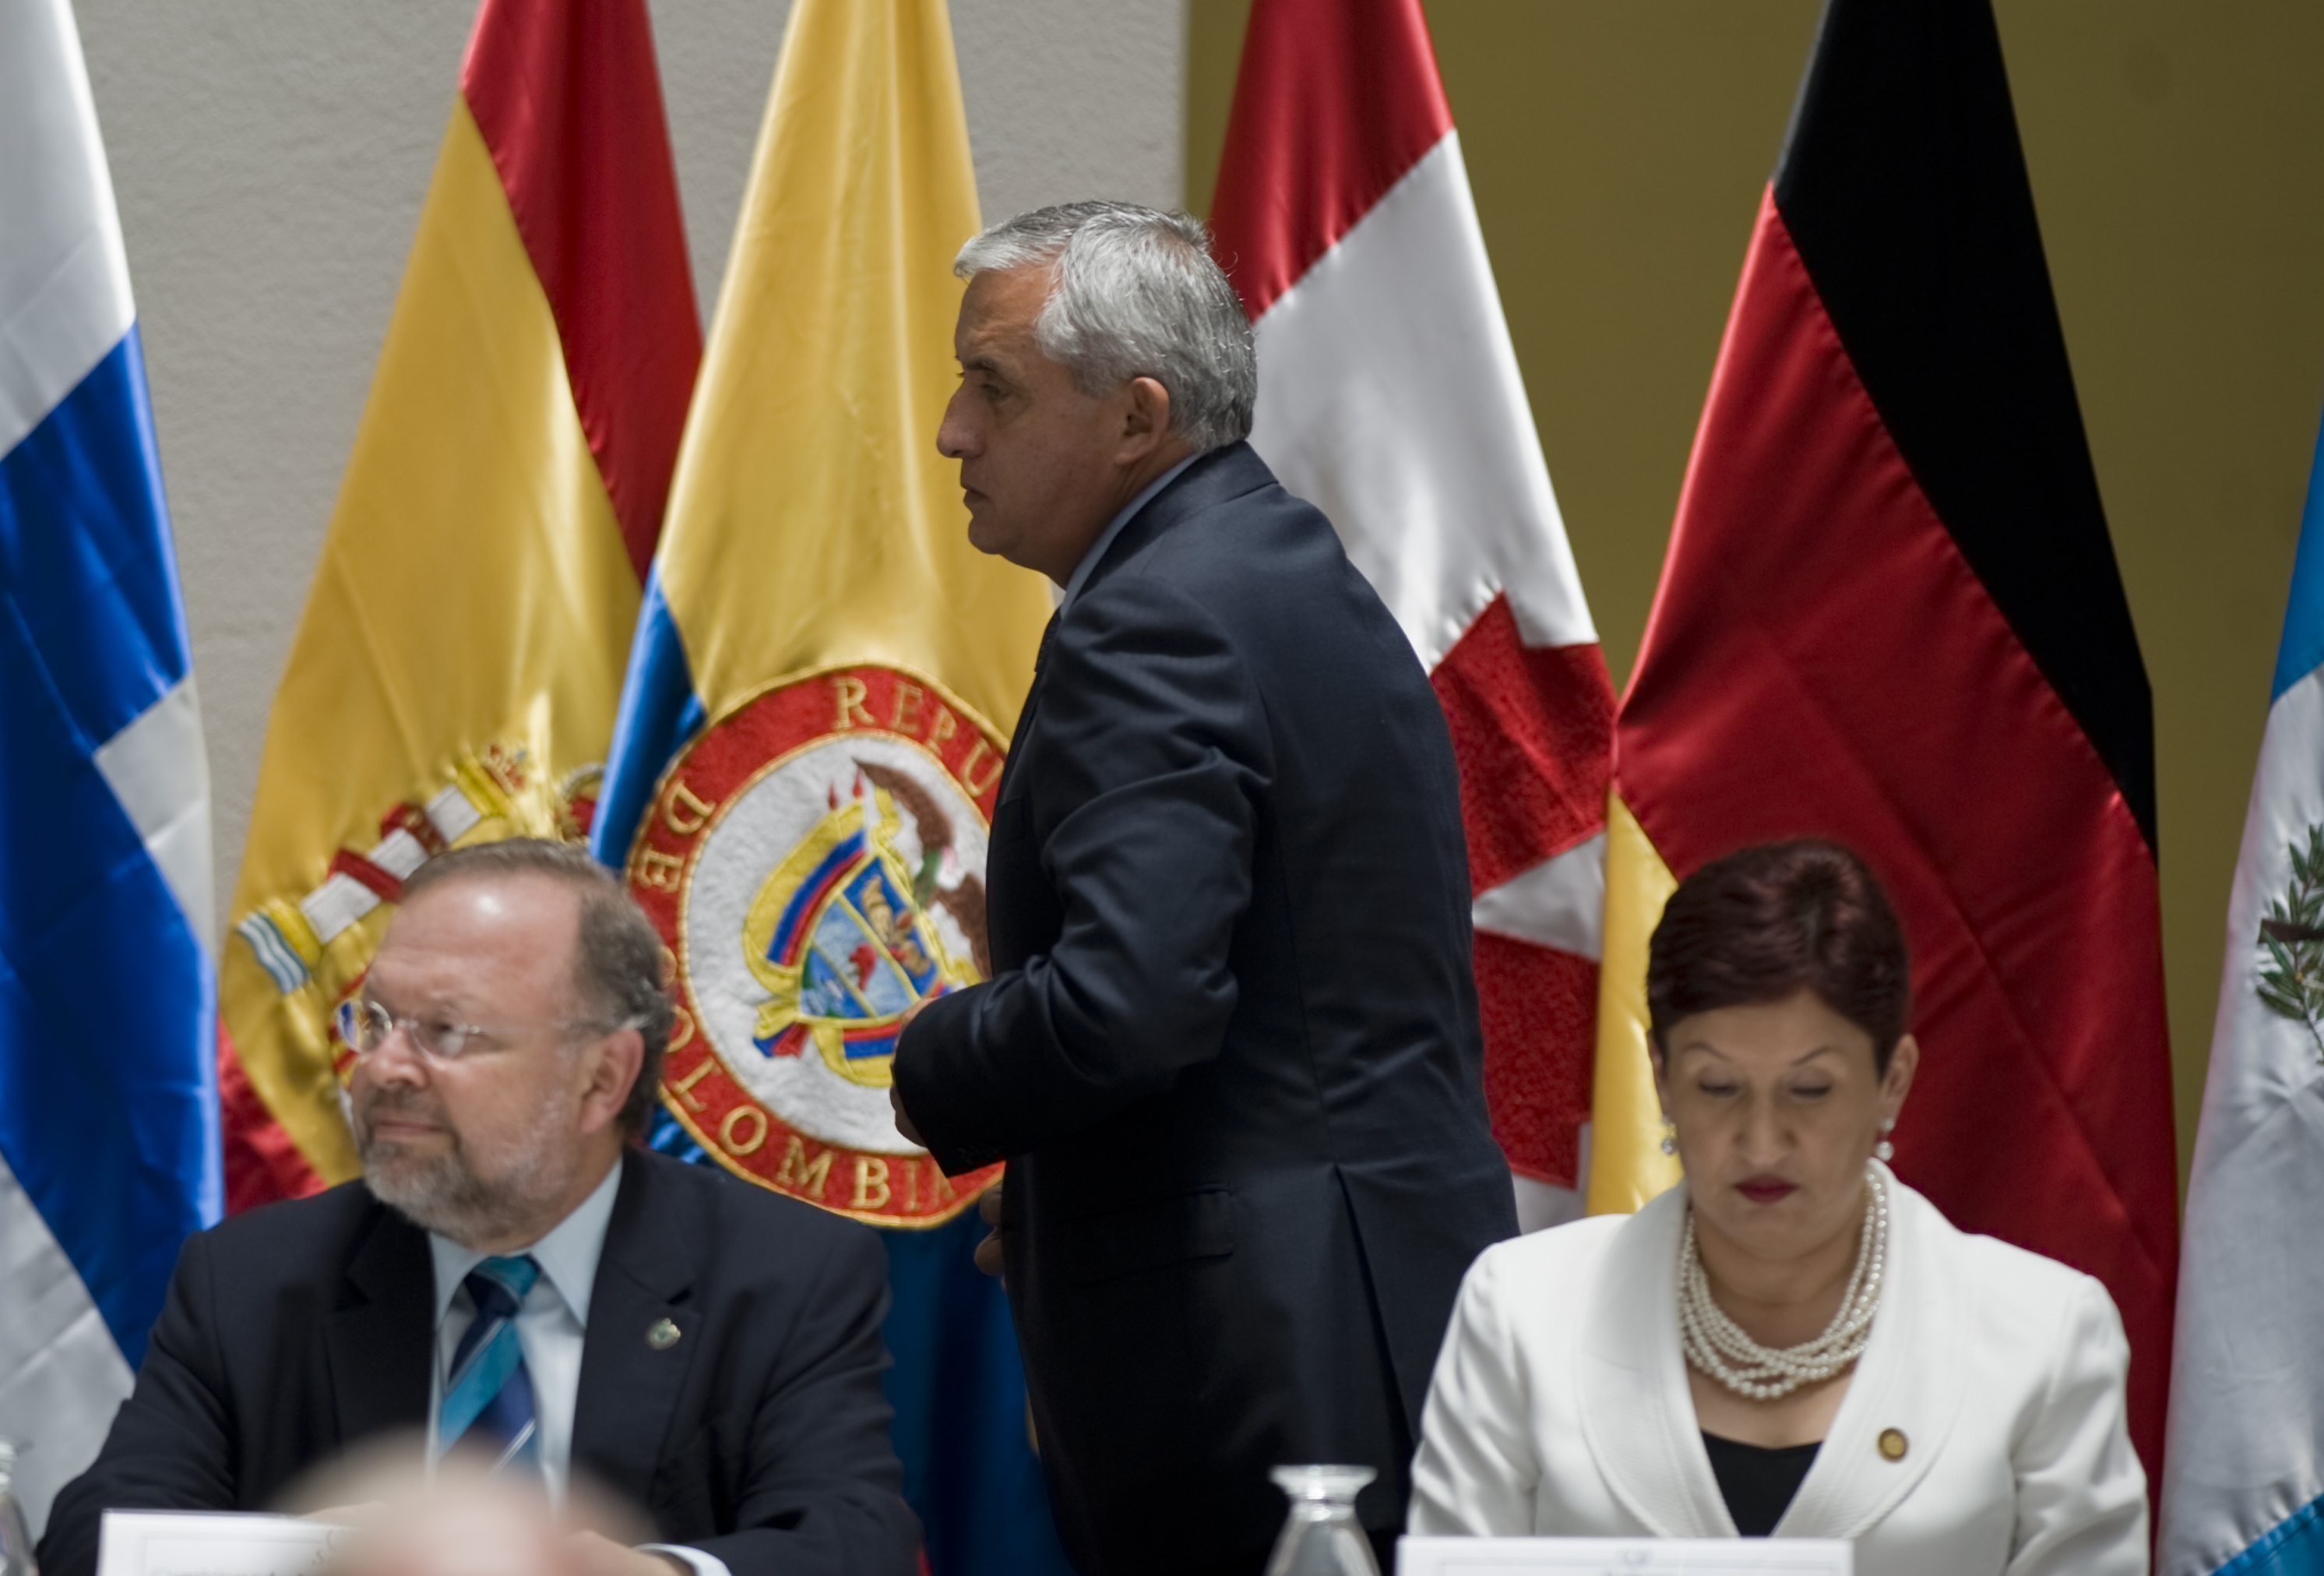 El expresidente nombró como fiscal general a Aldana el 9 de mayo del 2014. (Crédito: JOHAN ORDÓÑEZ/AFP/GettyImages)